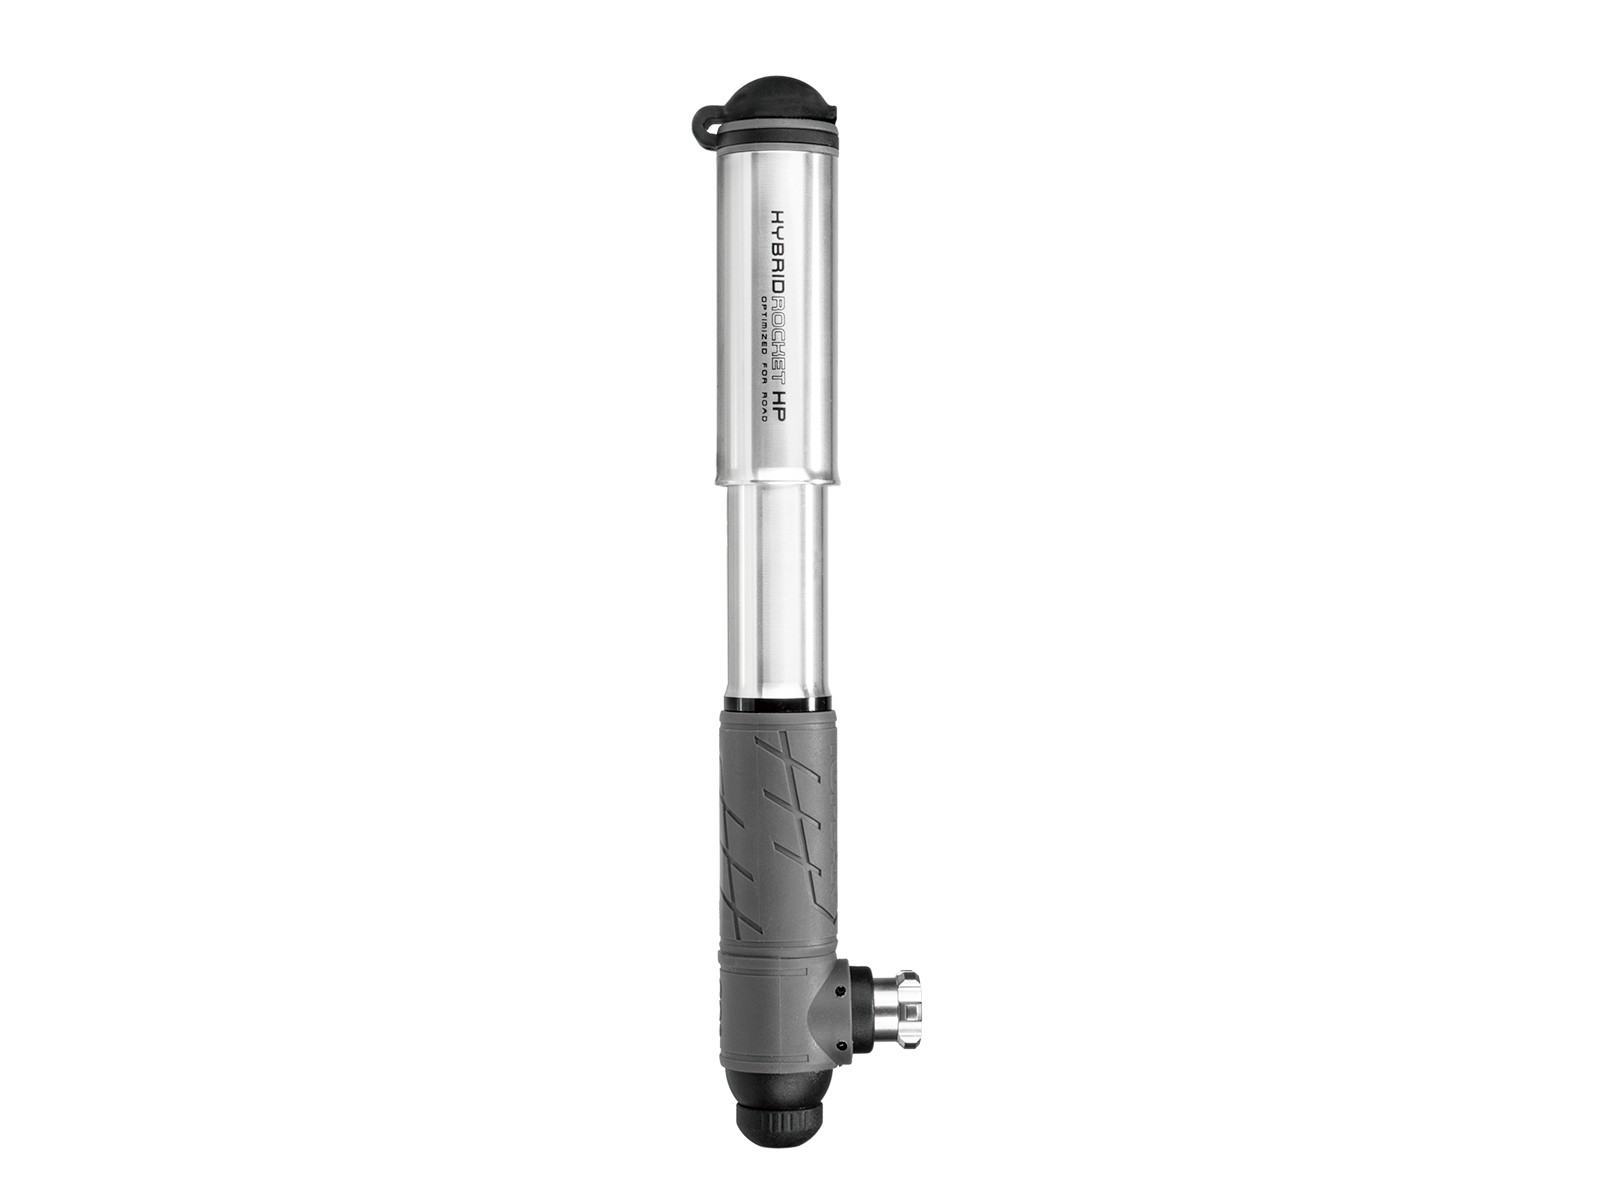 Насос Topeak Hybrid Rocket HP, 11bar/макс., алюм., серебряный., 97г